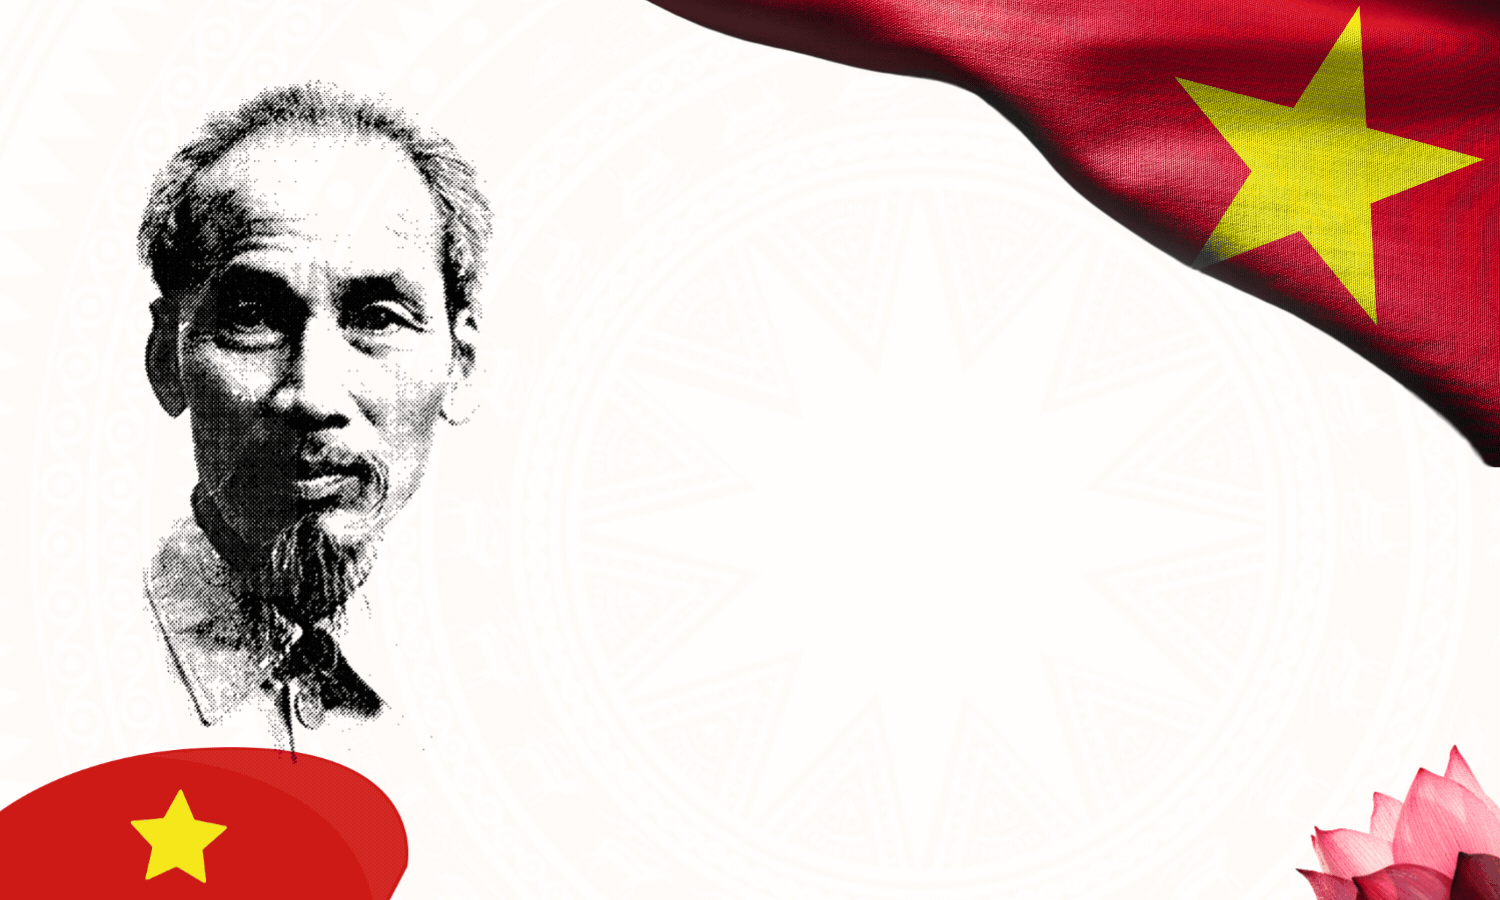 Phát huy tư tưởng, đạo đức, phong cách Hồ Chí Minh trong tình hình mới